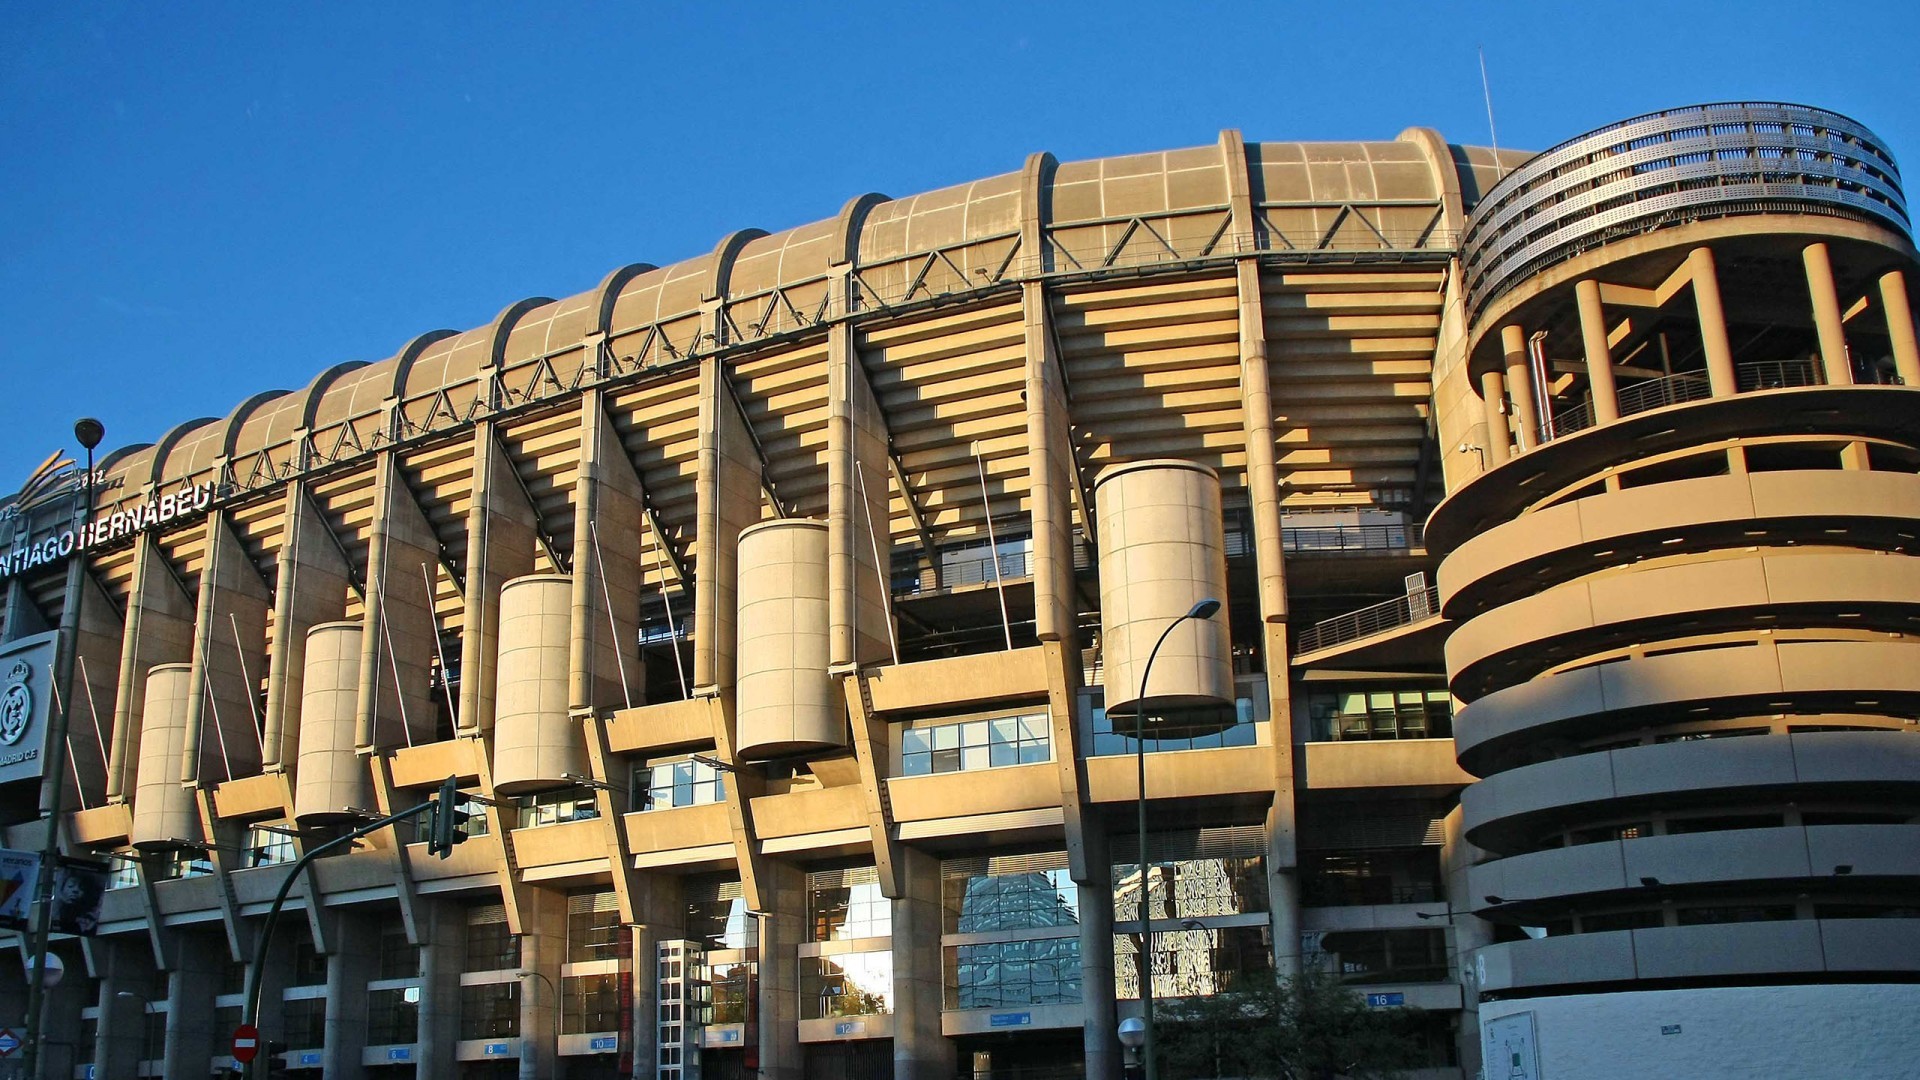 1920x1080 Santiago Bernabeu Stadium in Madrid